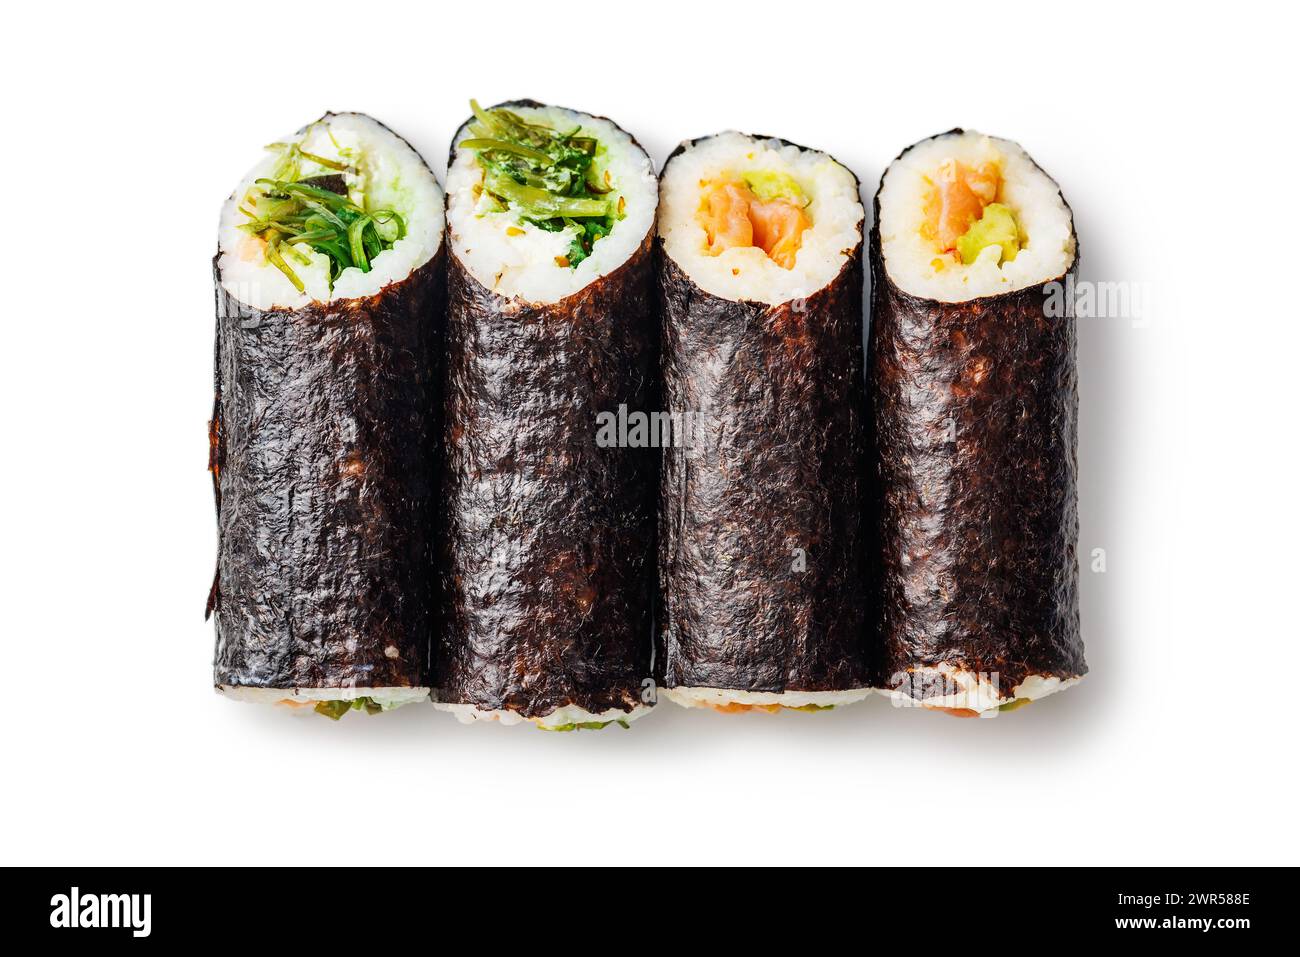 Eine detaillierte Ansicht der Sushi-Brötchen mit den verschiedenen farbenfrohen Zutaten, die eng mit Algen und Reis umhüllt sind, vor einem schlichten weißen Hintergrund. Stockfoto